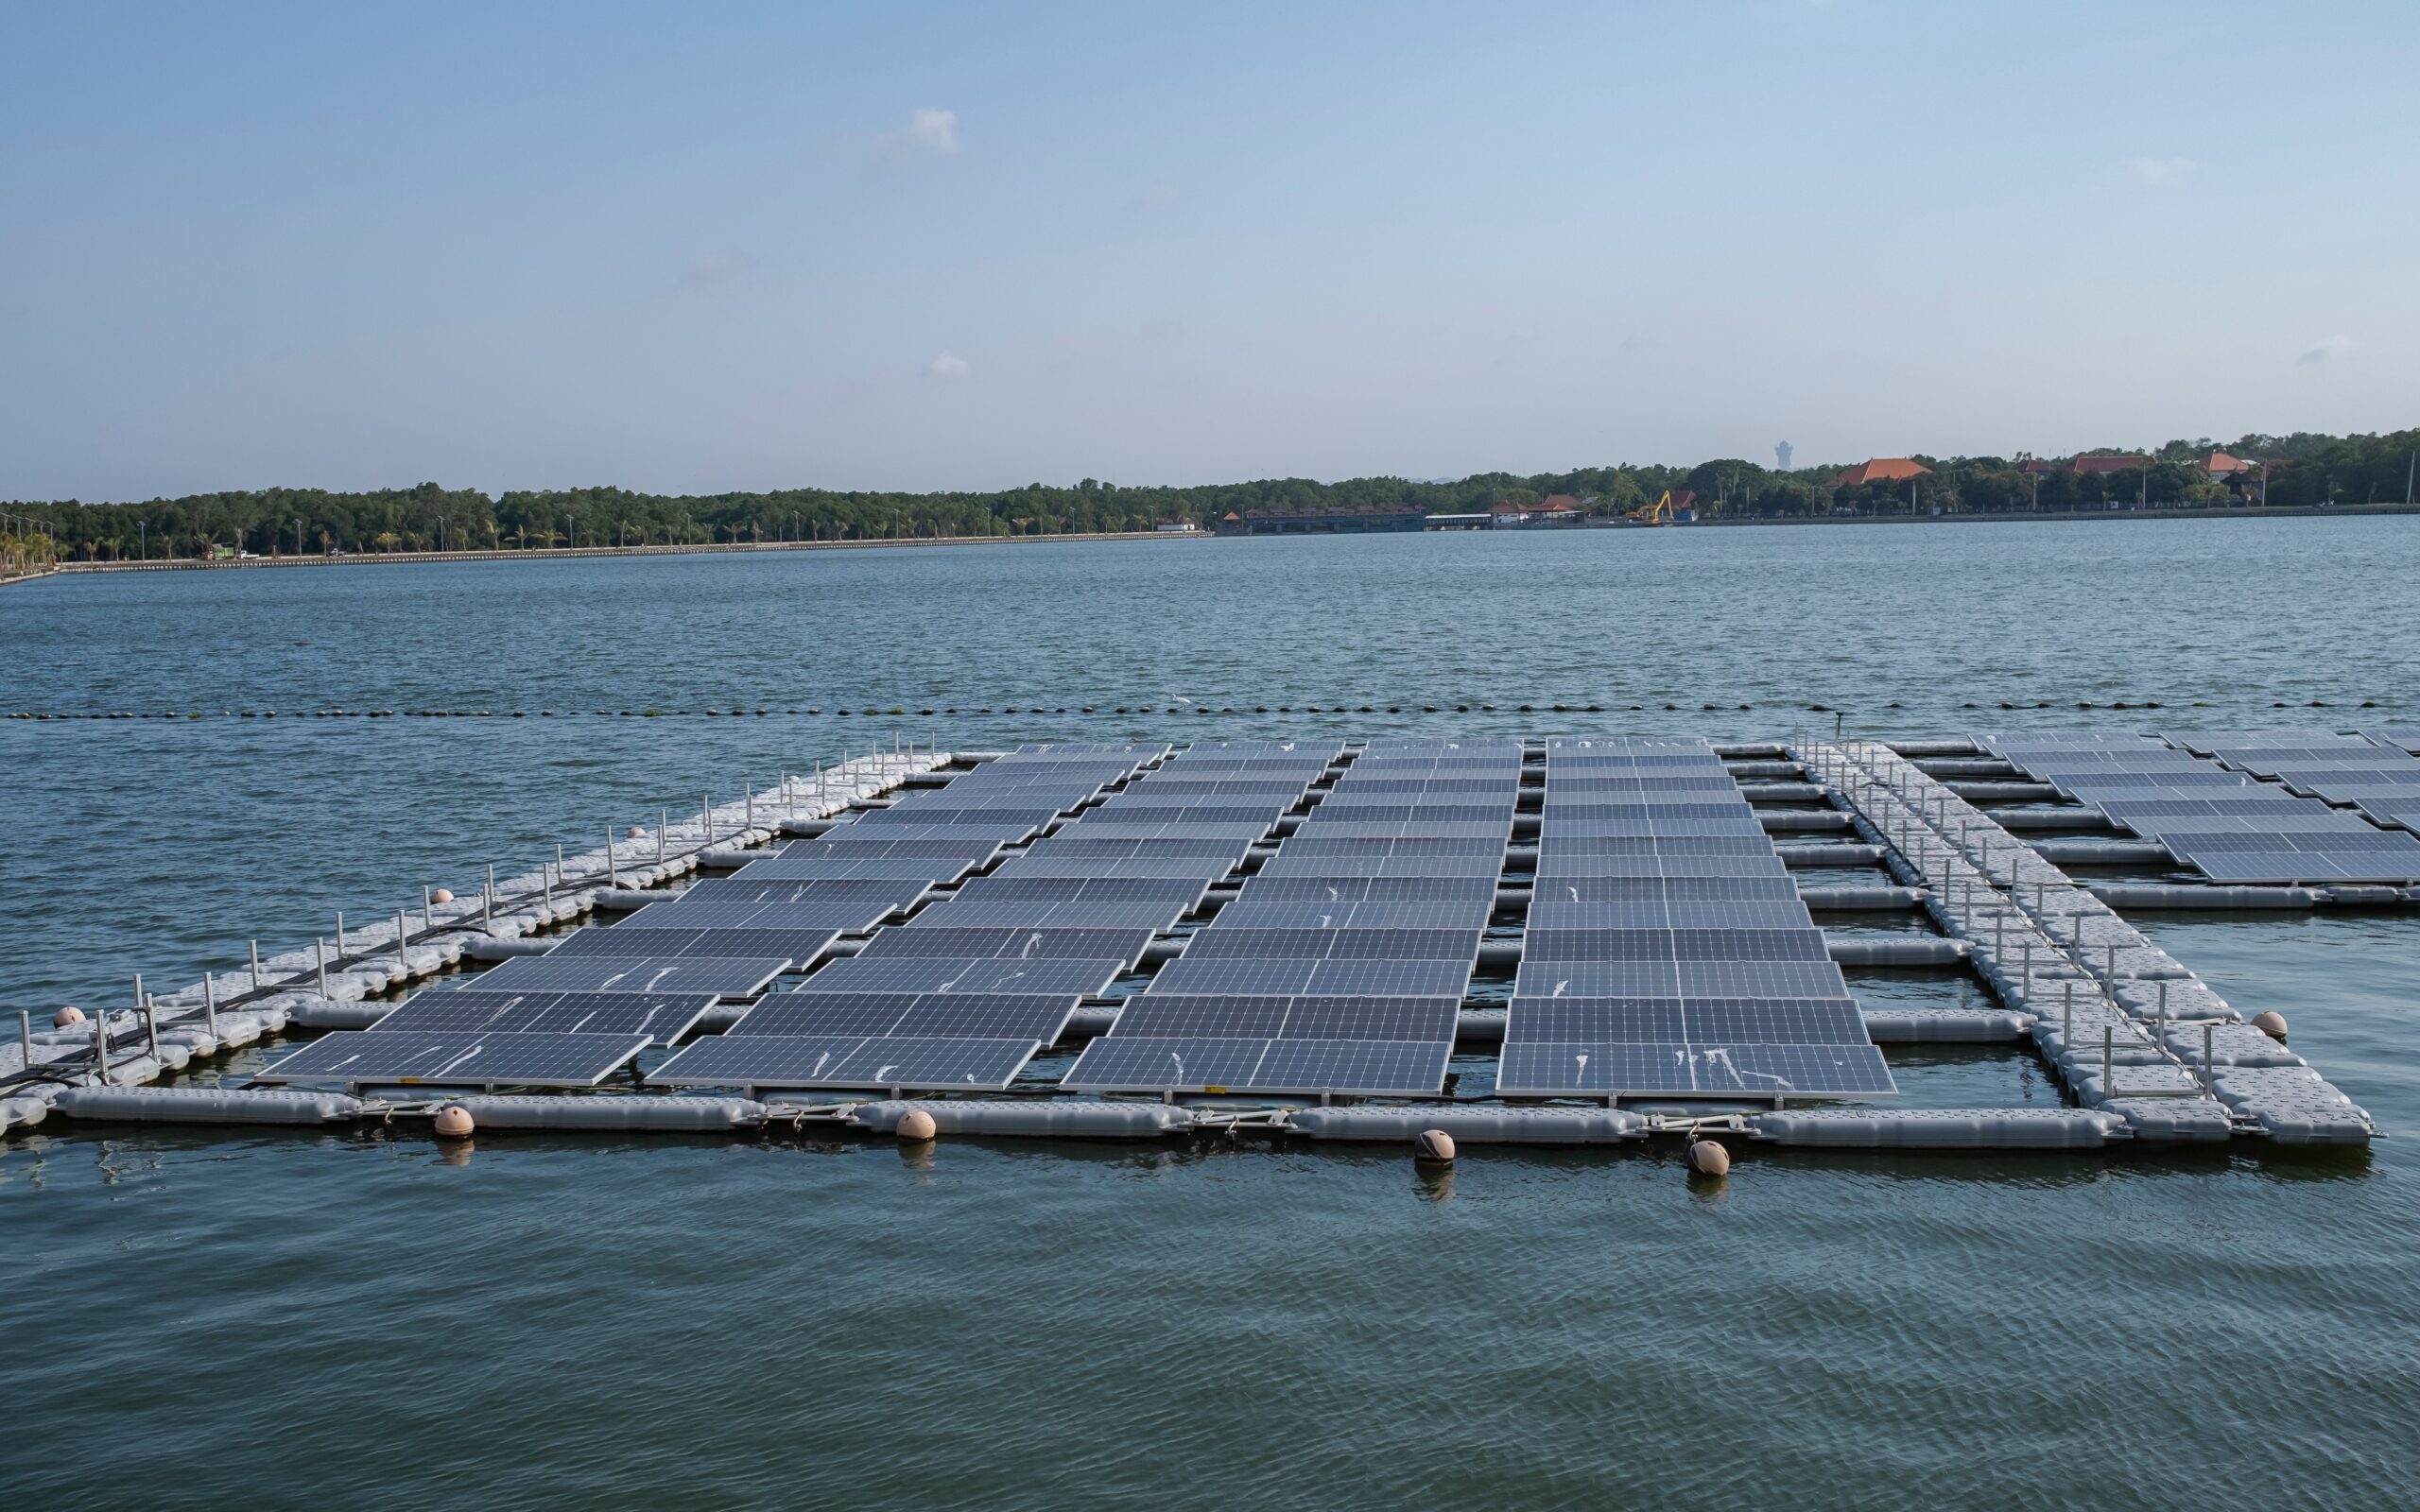 Floating solar panels mulled image